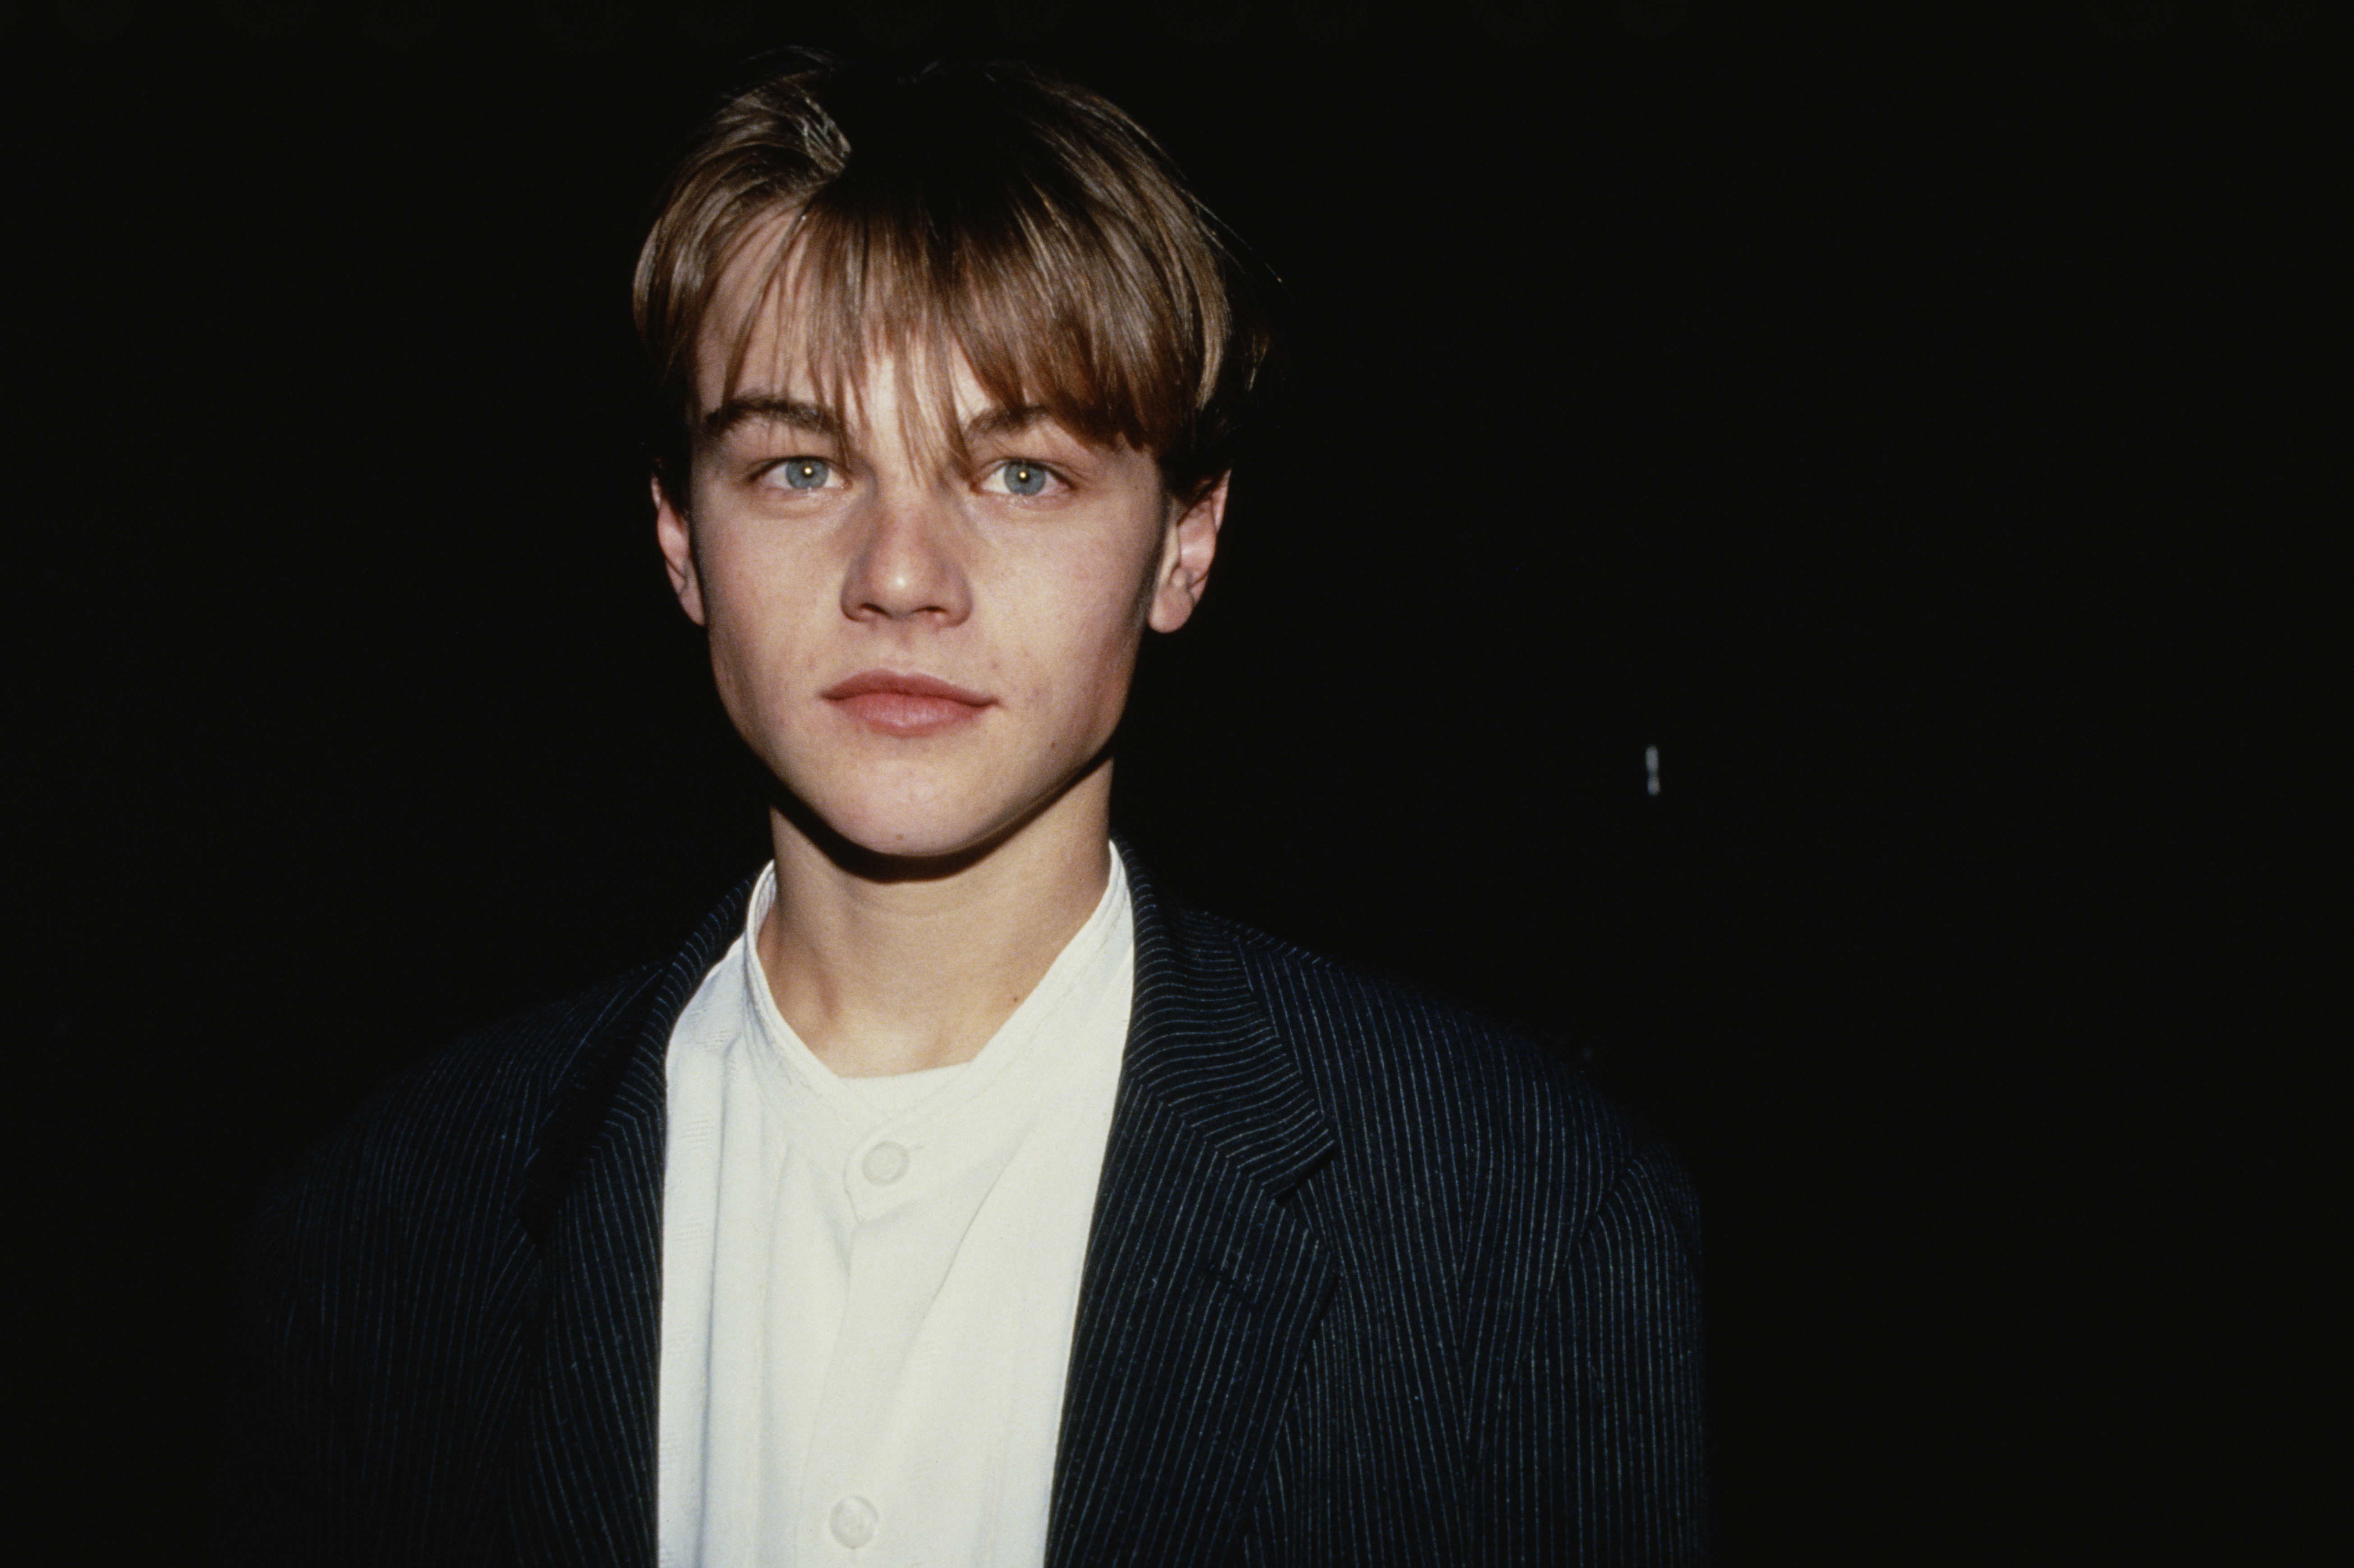 Leonardo DiCaprio, circa 1993 | Source: Getty Images